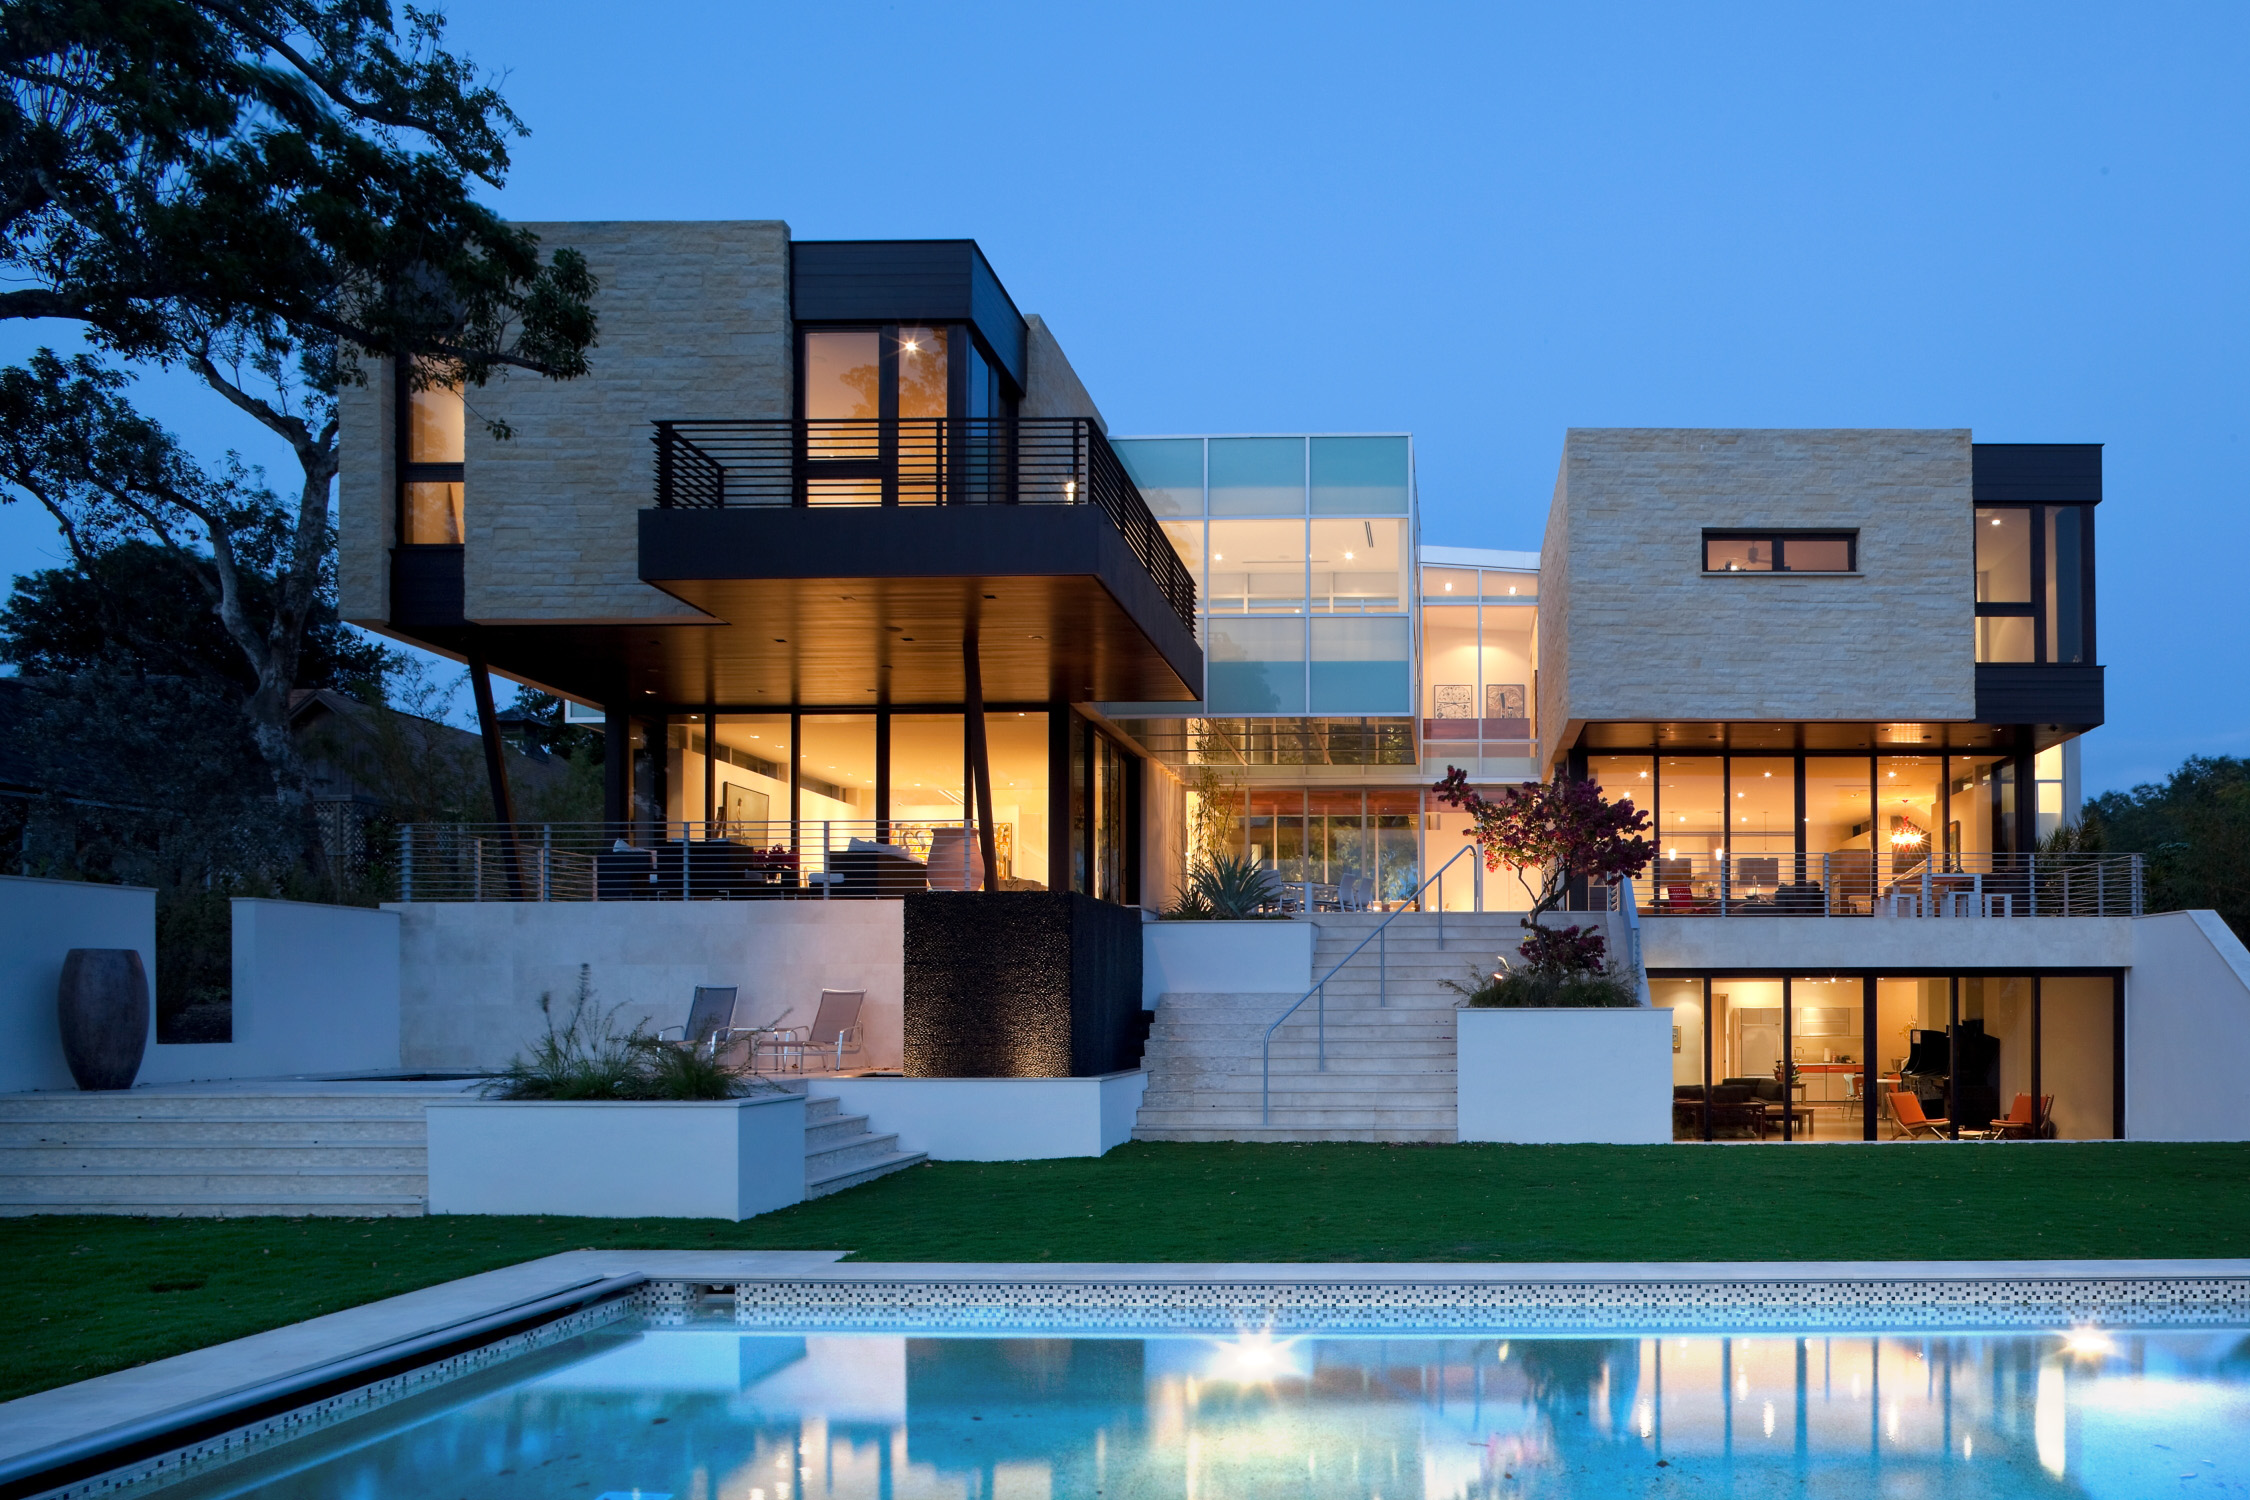 We house is beautiful. Четырёхэтажный особняк с бассейном в Нью-Йорке. Modern Mansion Лос Анджелес. Модерн Хаус концепт. Особняк в современном стиле.